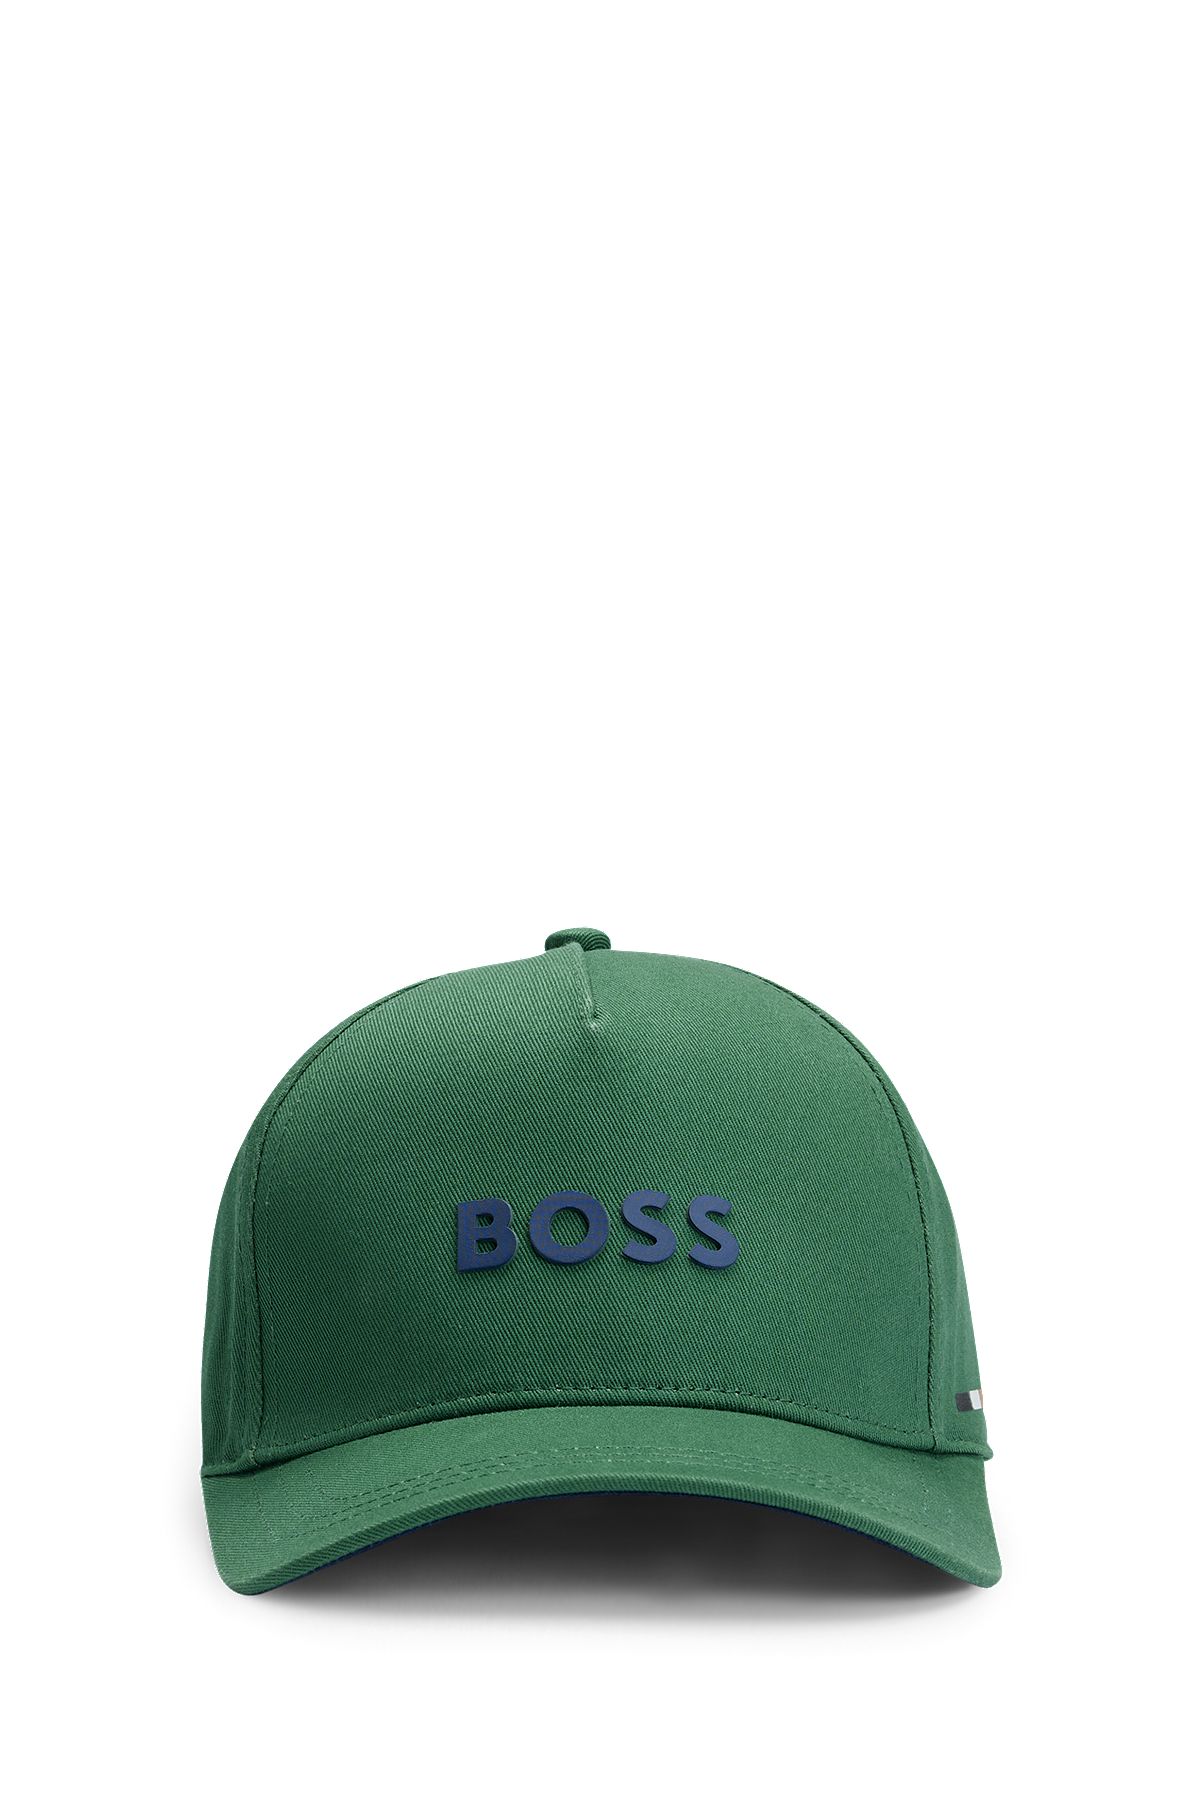 Kids' cap in cotton twill with logo details, Dark Green